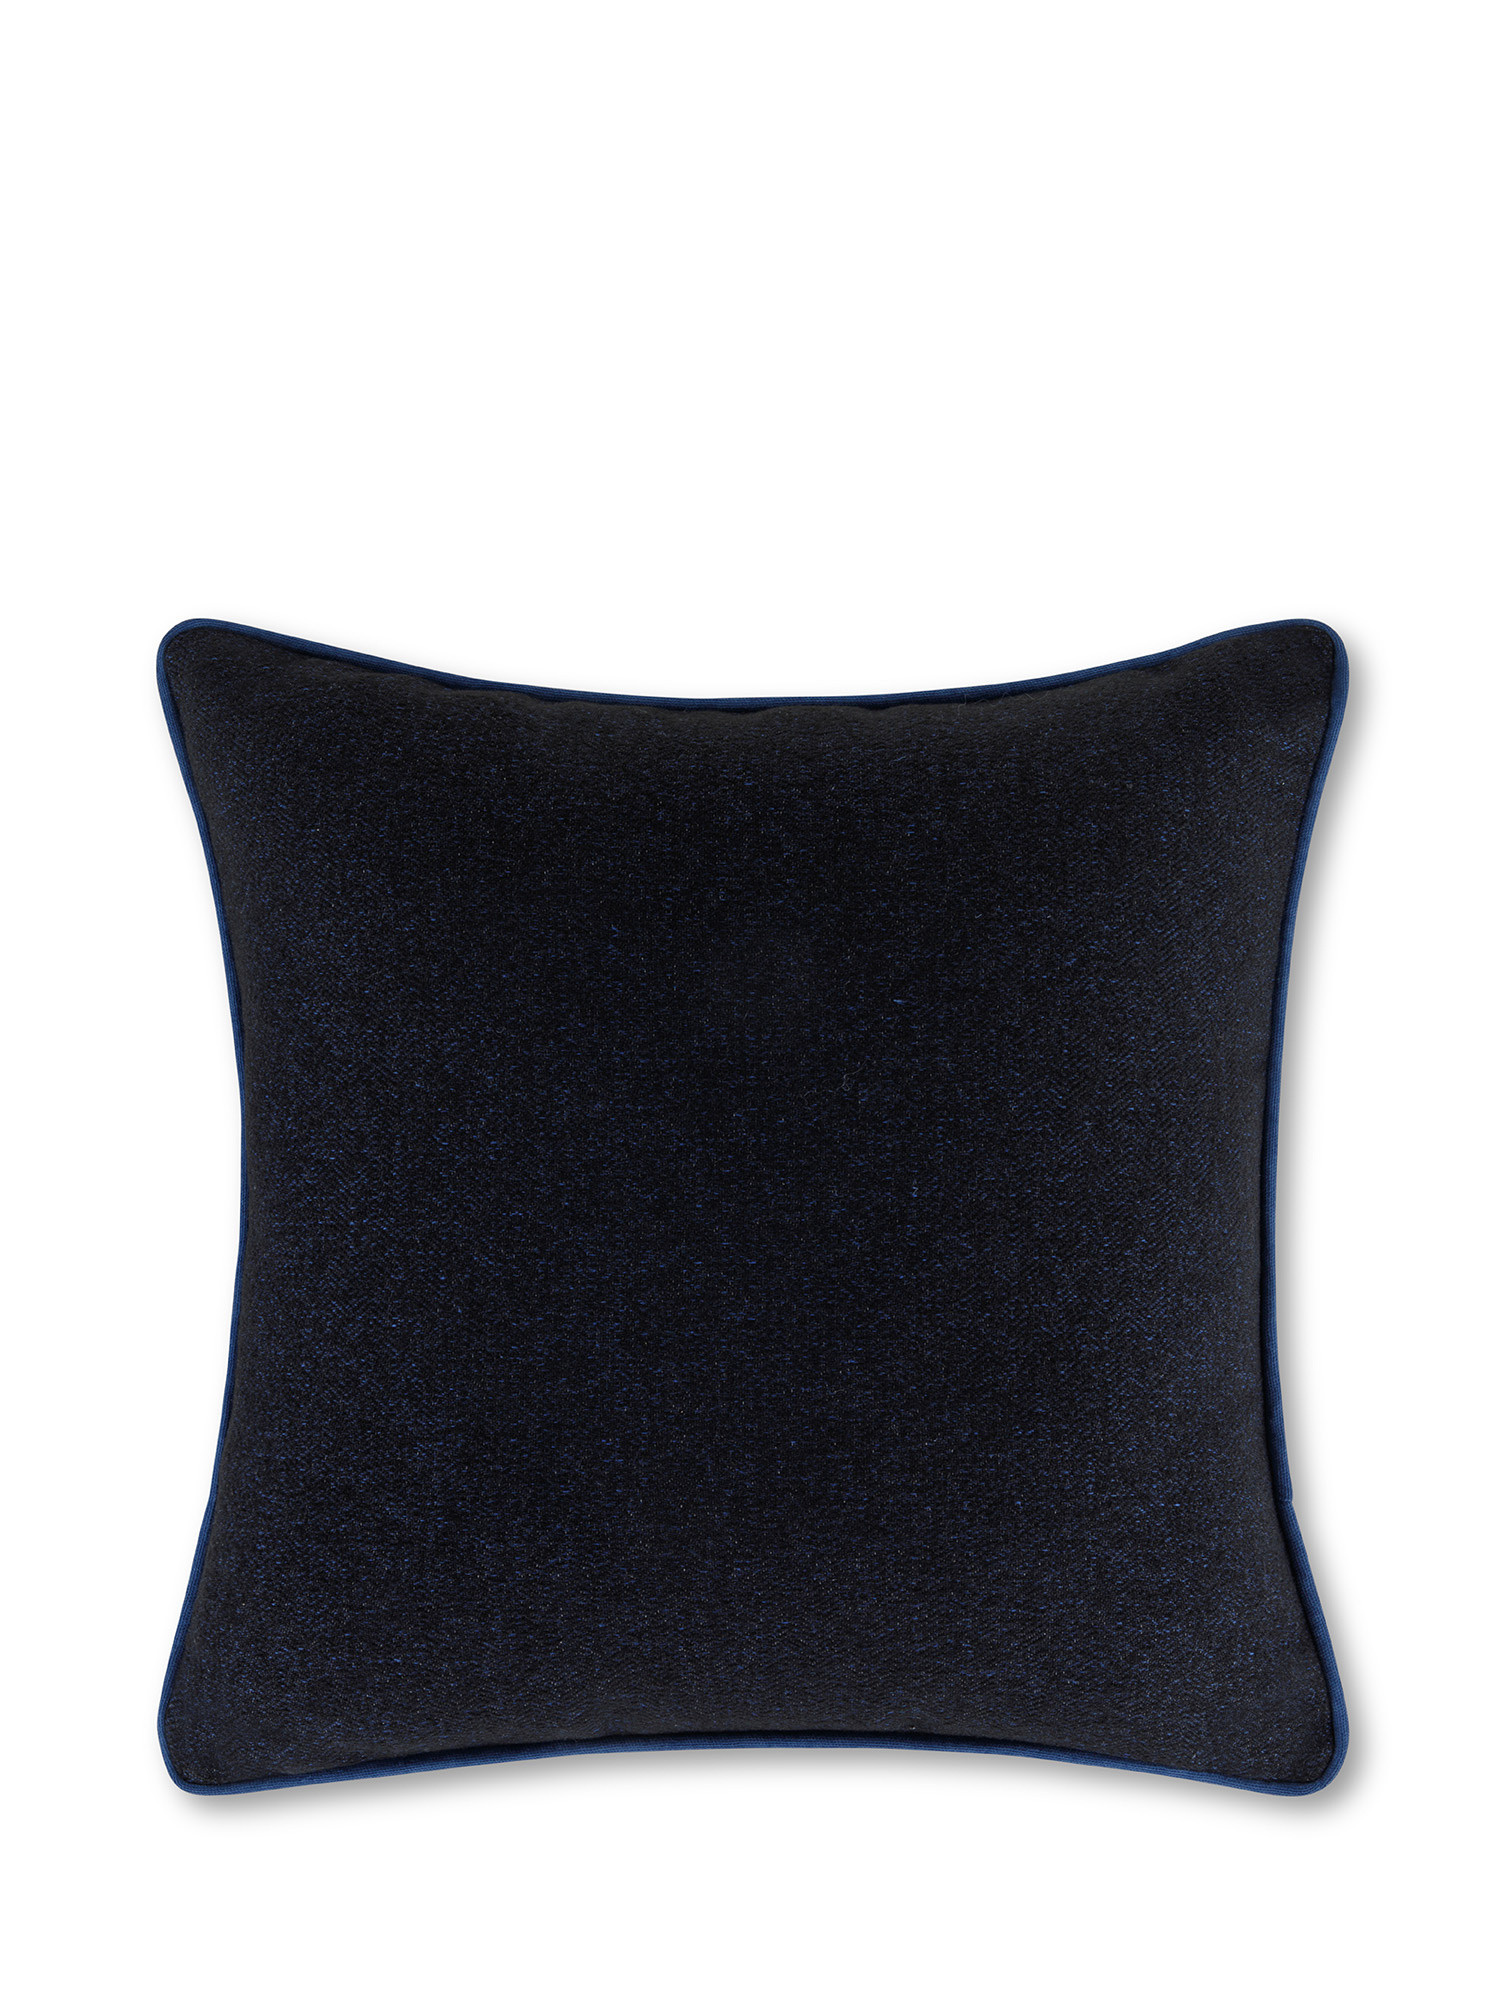 Cuscino in tessuto effetto Tweed a Spina di Pesce 45x45 cm, Blu scuro, large